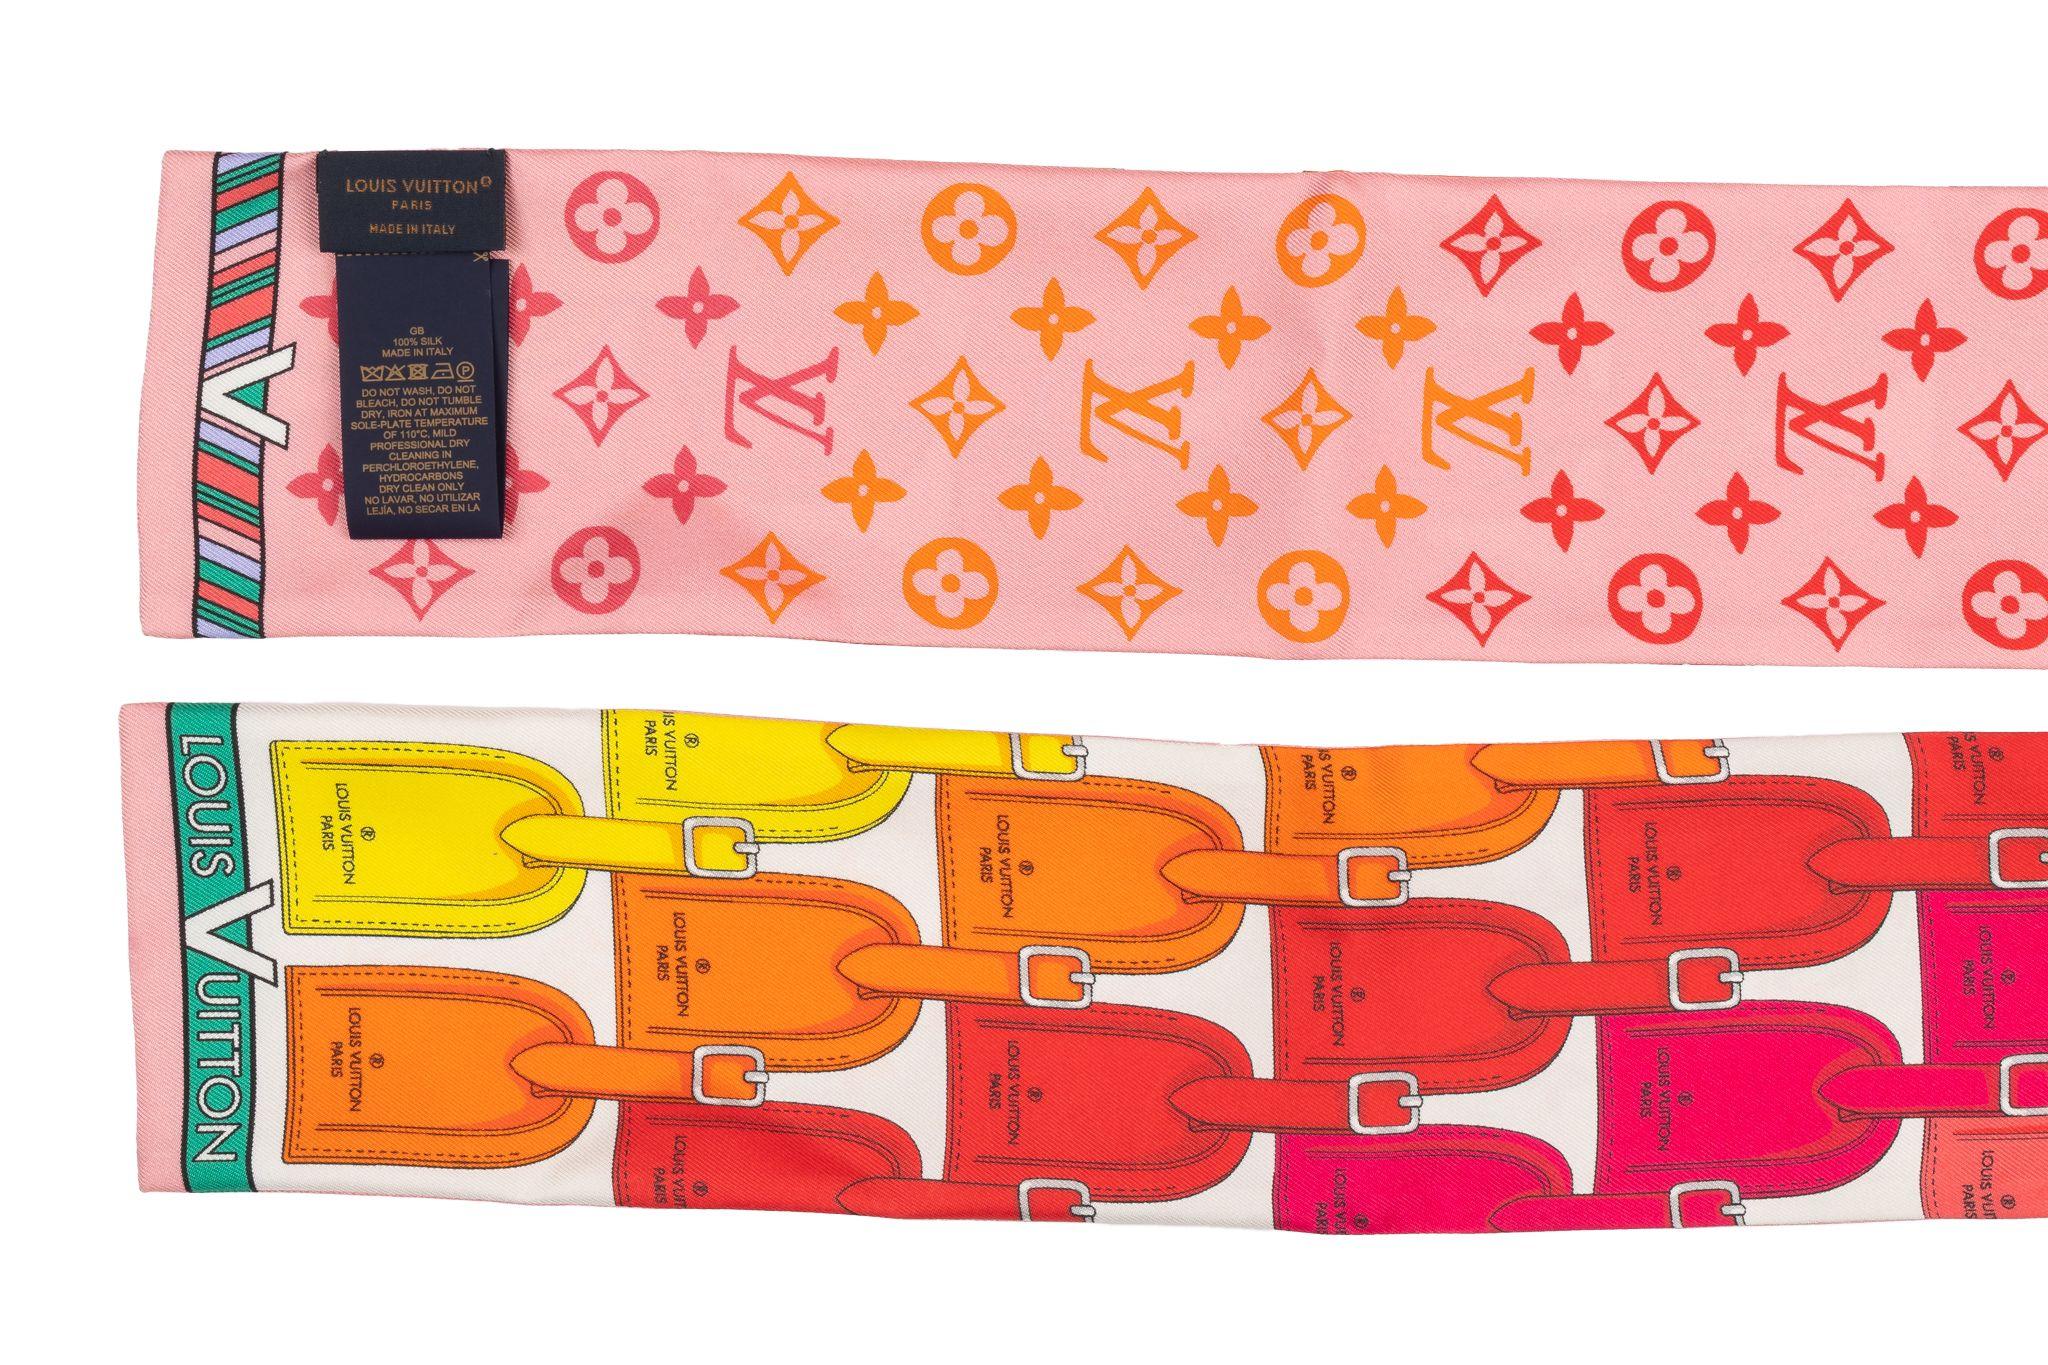 Louis Vuitton Taschenanhänger Bandeau in Multicolor aus 100% Seide. Dieser lange Schal im Bandeau-Stil hat eine luxuriöse Ausstrahlung. Es ist brandneu und wird mit der Originalverpackung geliefert.